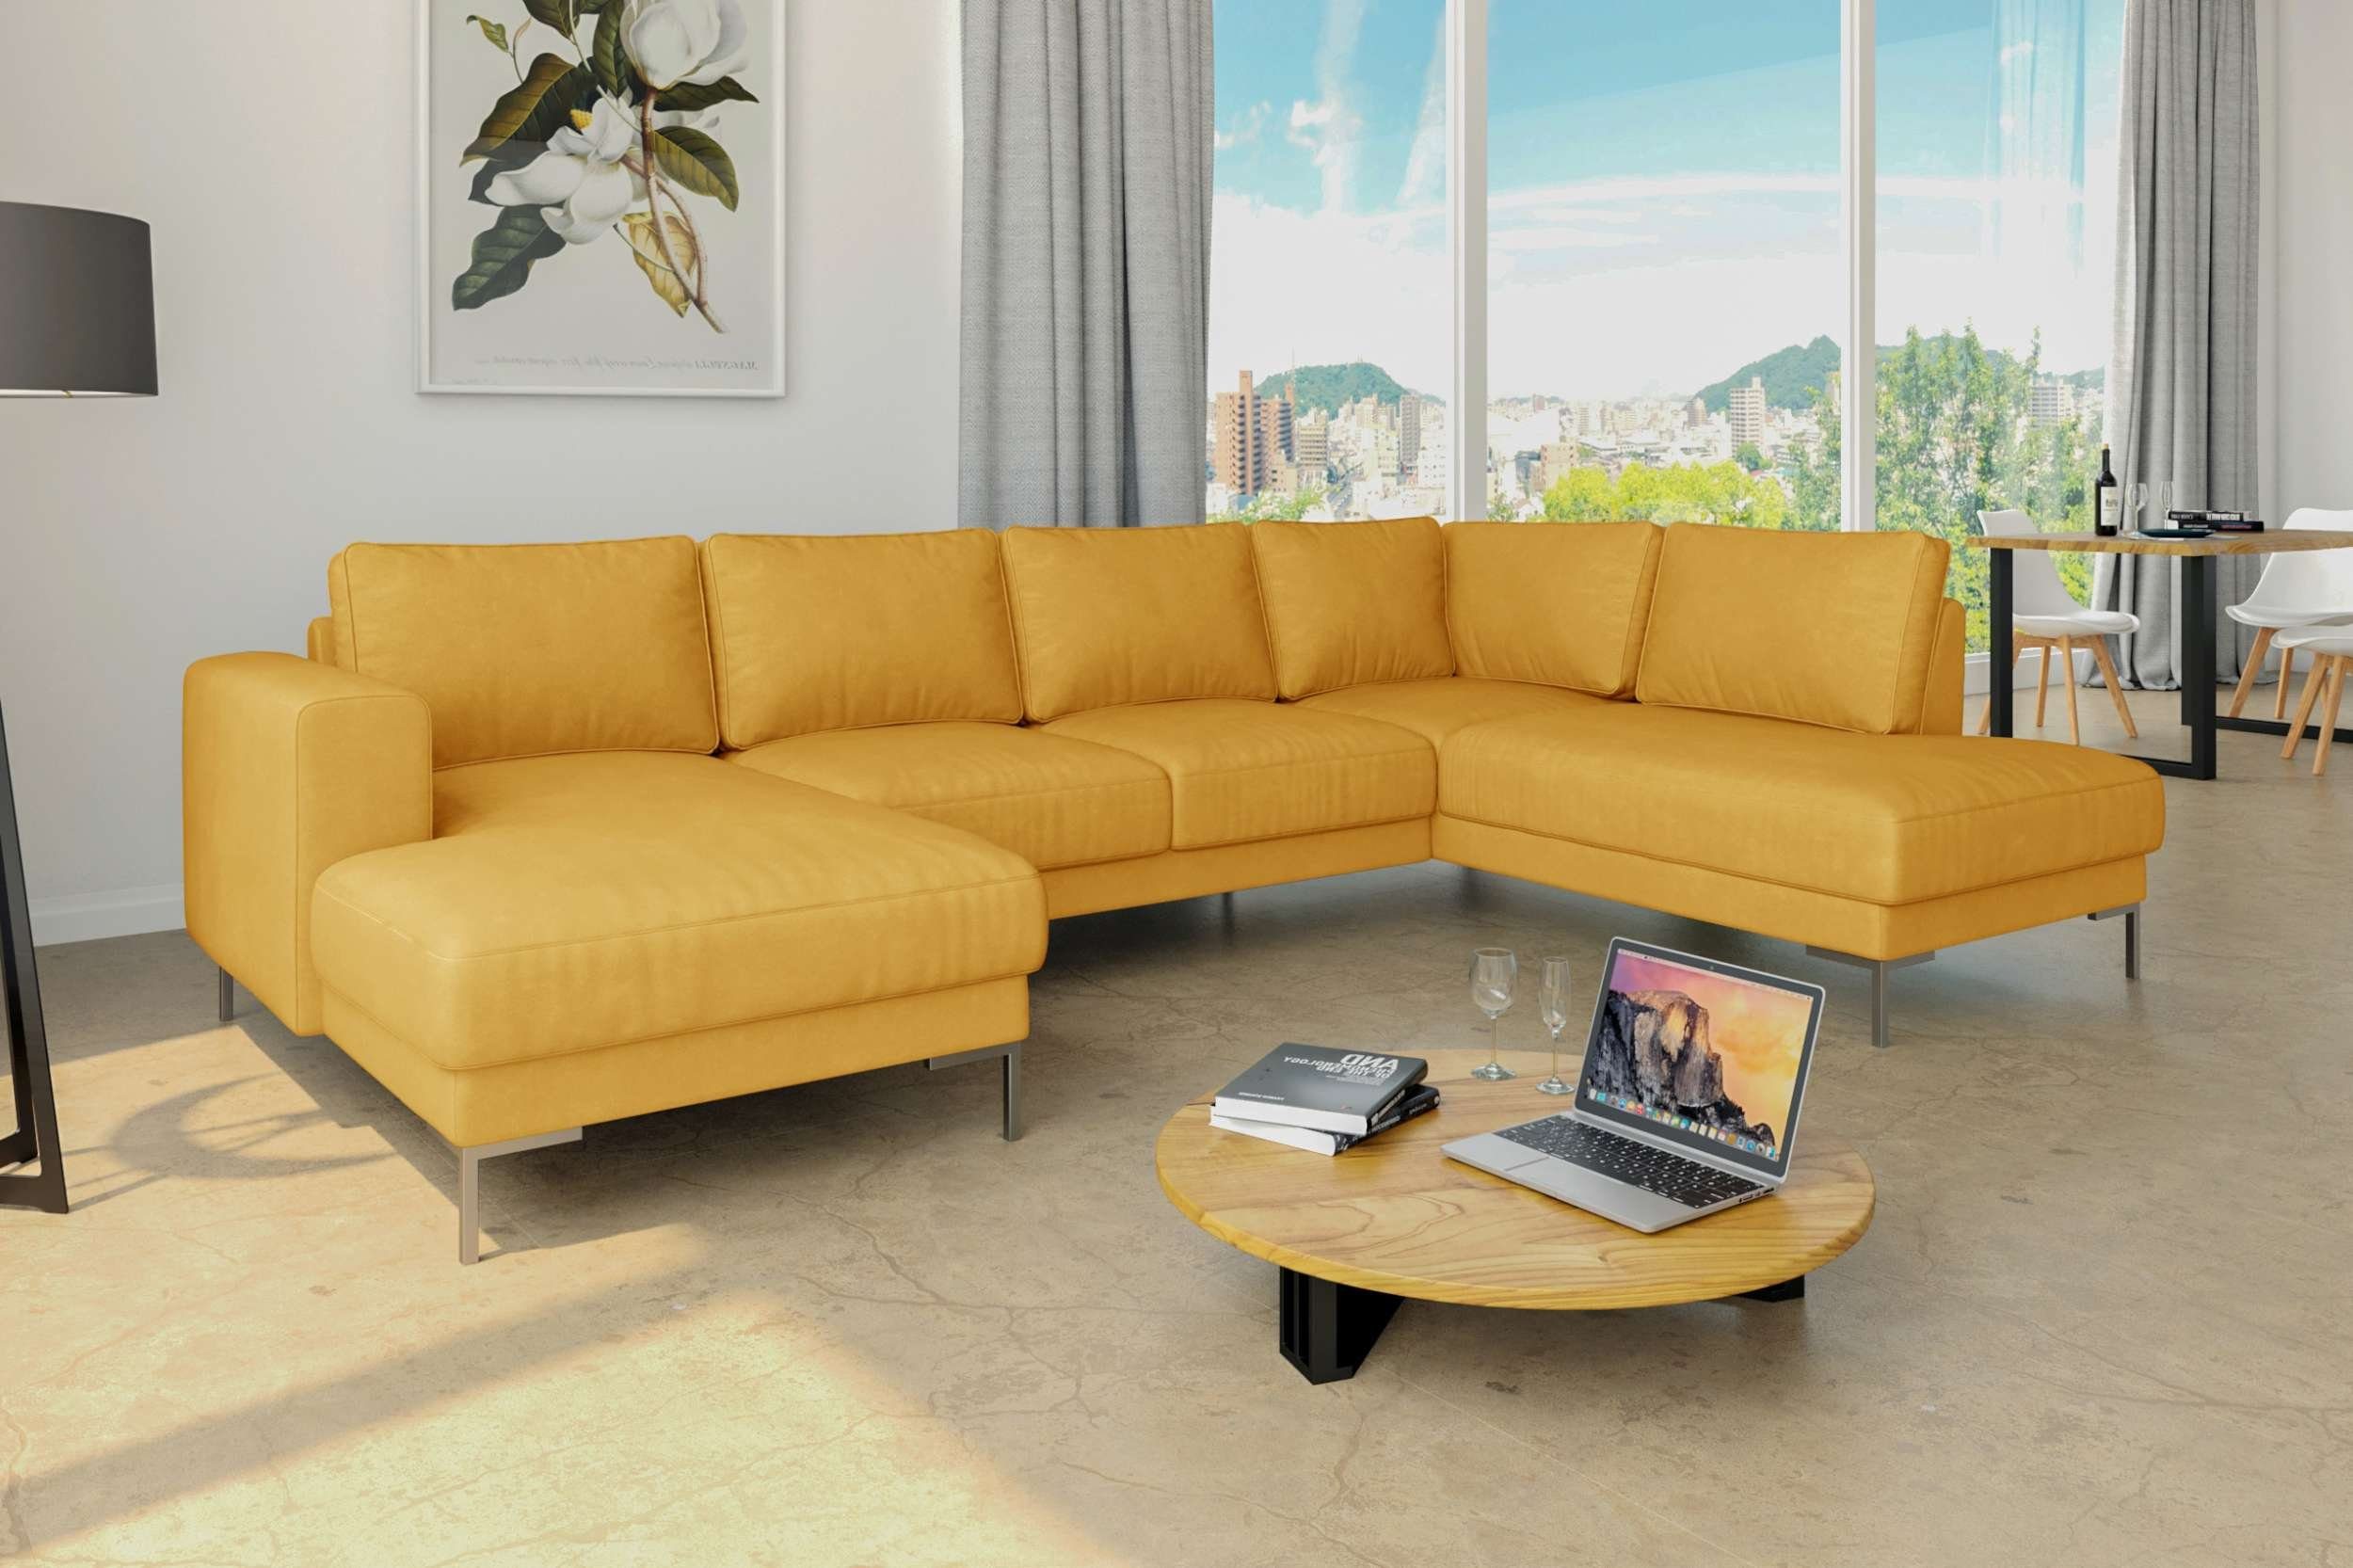 frei oder Design, Santini, Wellenfederung, stellbar, links mane bestellbar, U-Form, Gelb Modern im Raum mit Stylefy rechts Metall Wohnlandschaft Sofa,